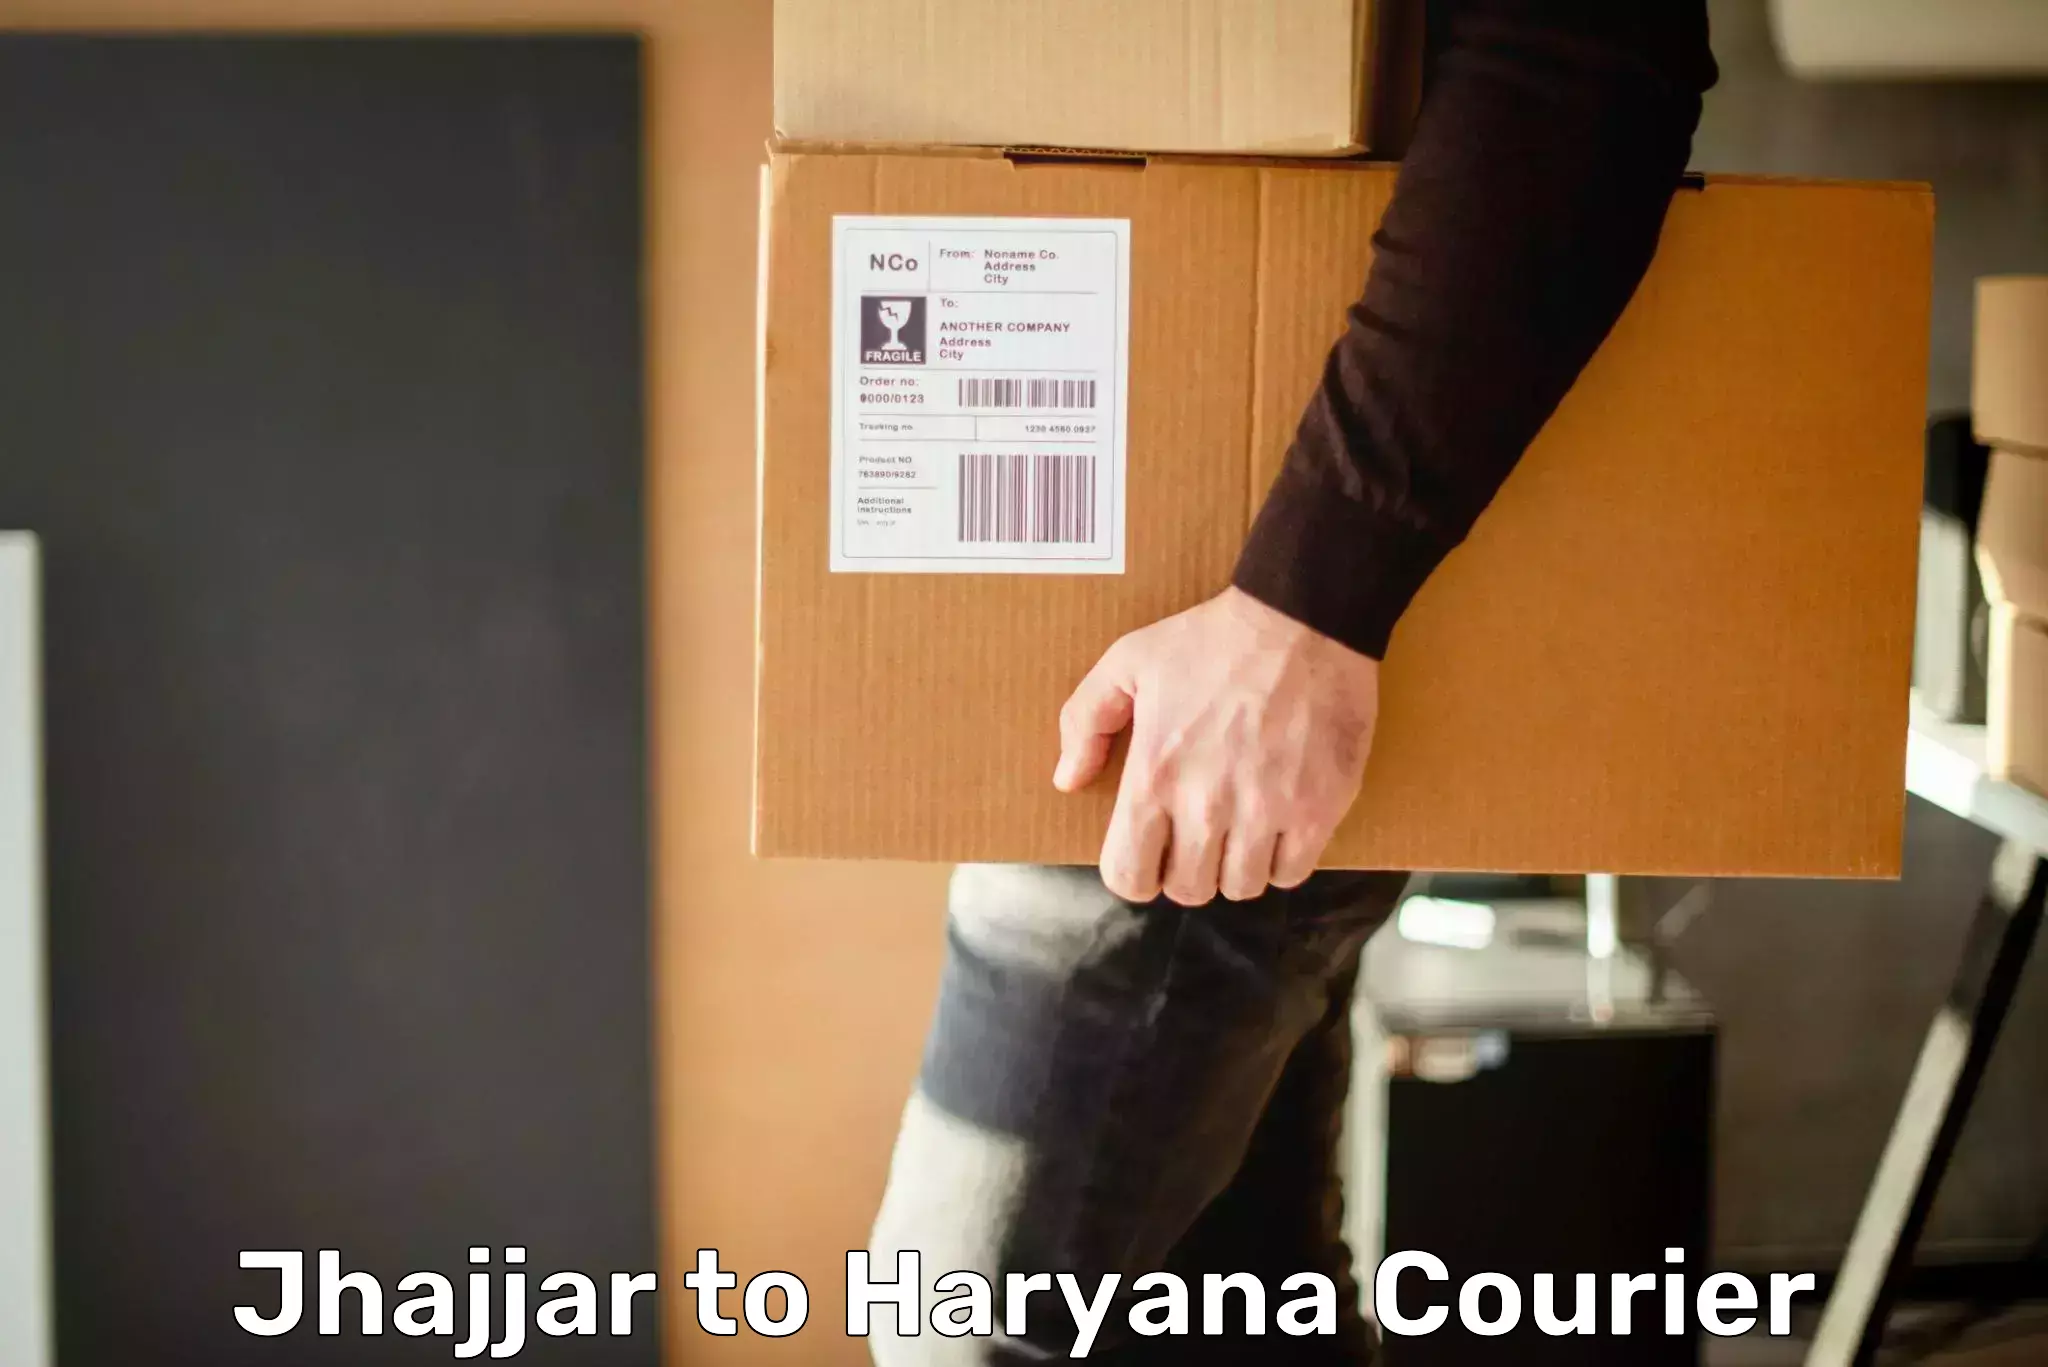 Shipping and handling Jhajjar to Julana